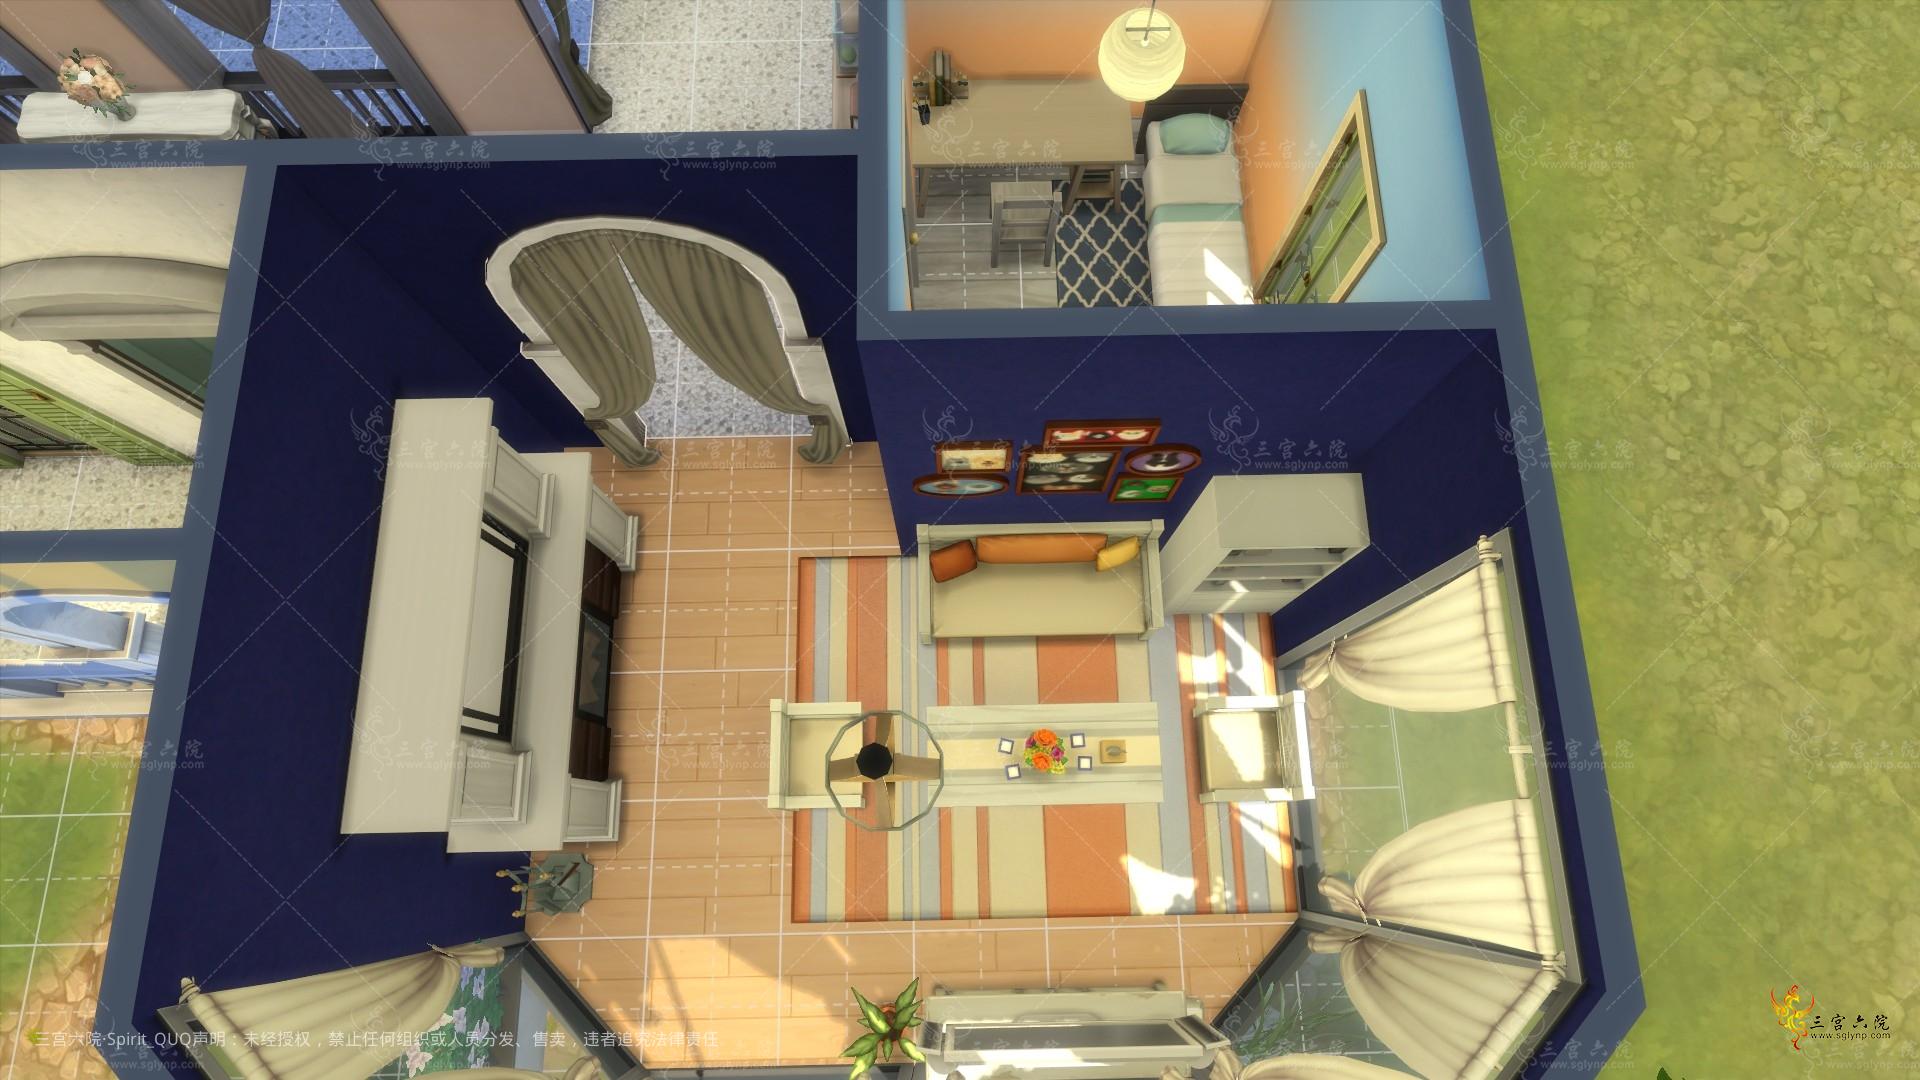 Sims 4 Screenshot 2022.04.05 - 21.21.39.73.png